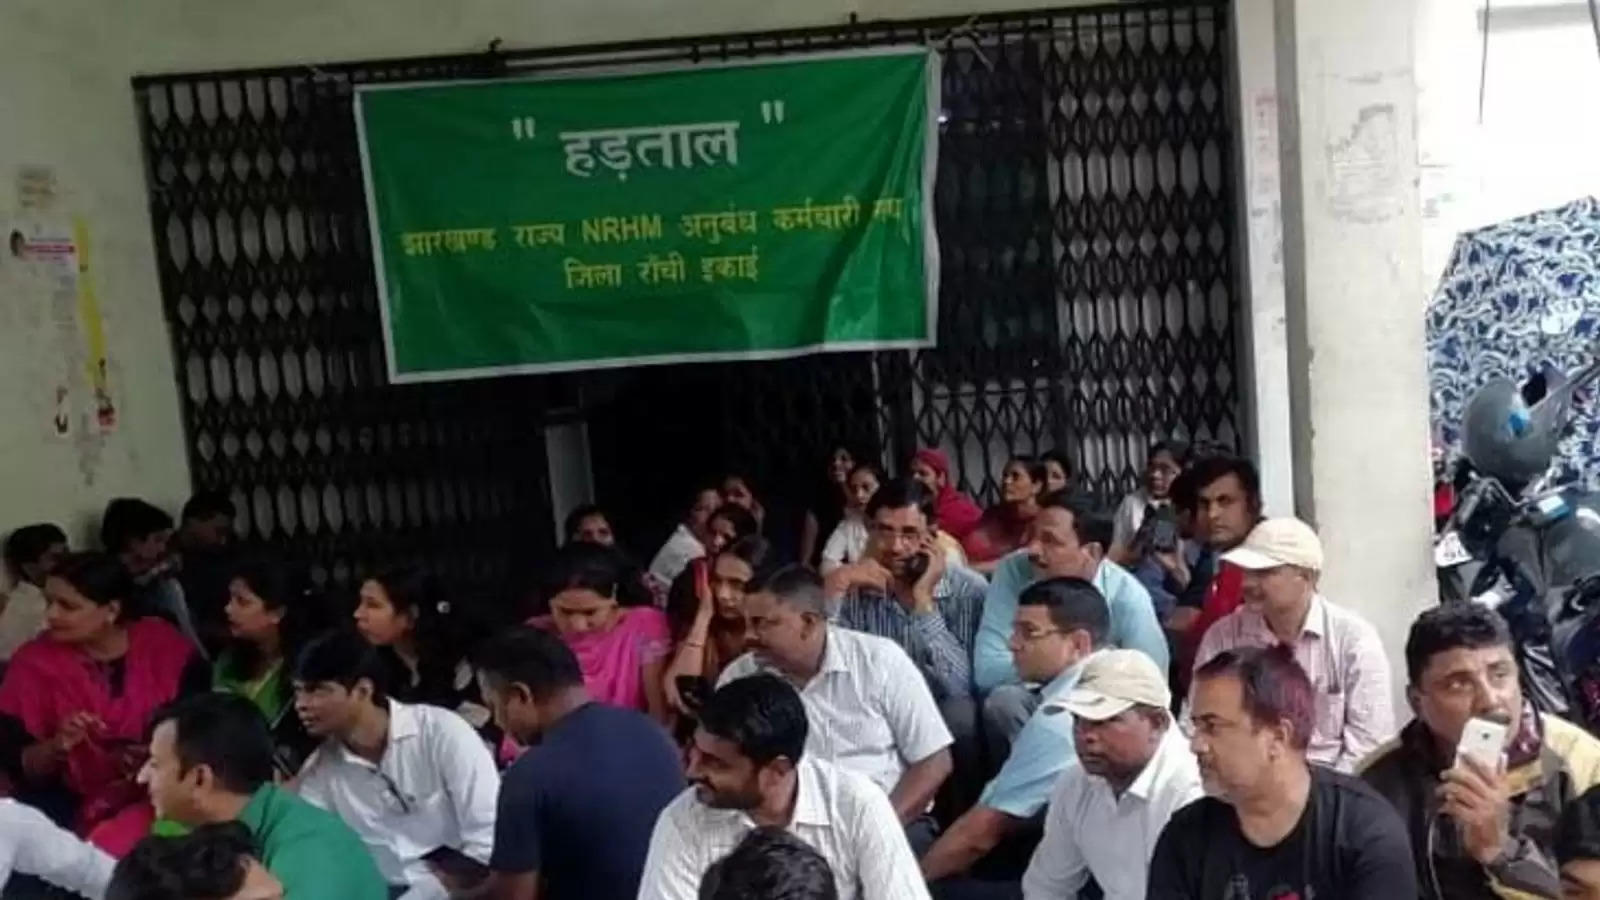 राजभवन के पास अनशन पर बैठे पैरामेडिकल कर्मियों की तबीयत बिगड़ी - Health of paramedical personnel sitting on hunger strike near Raj Bhavan deteriorated